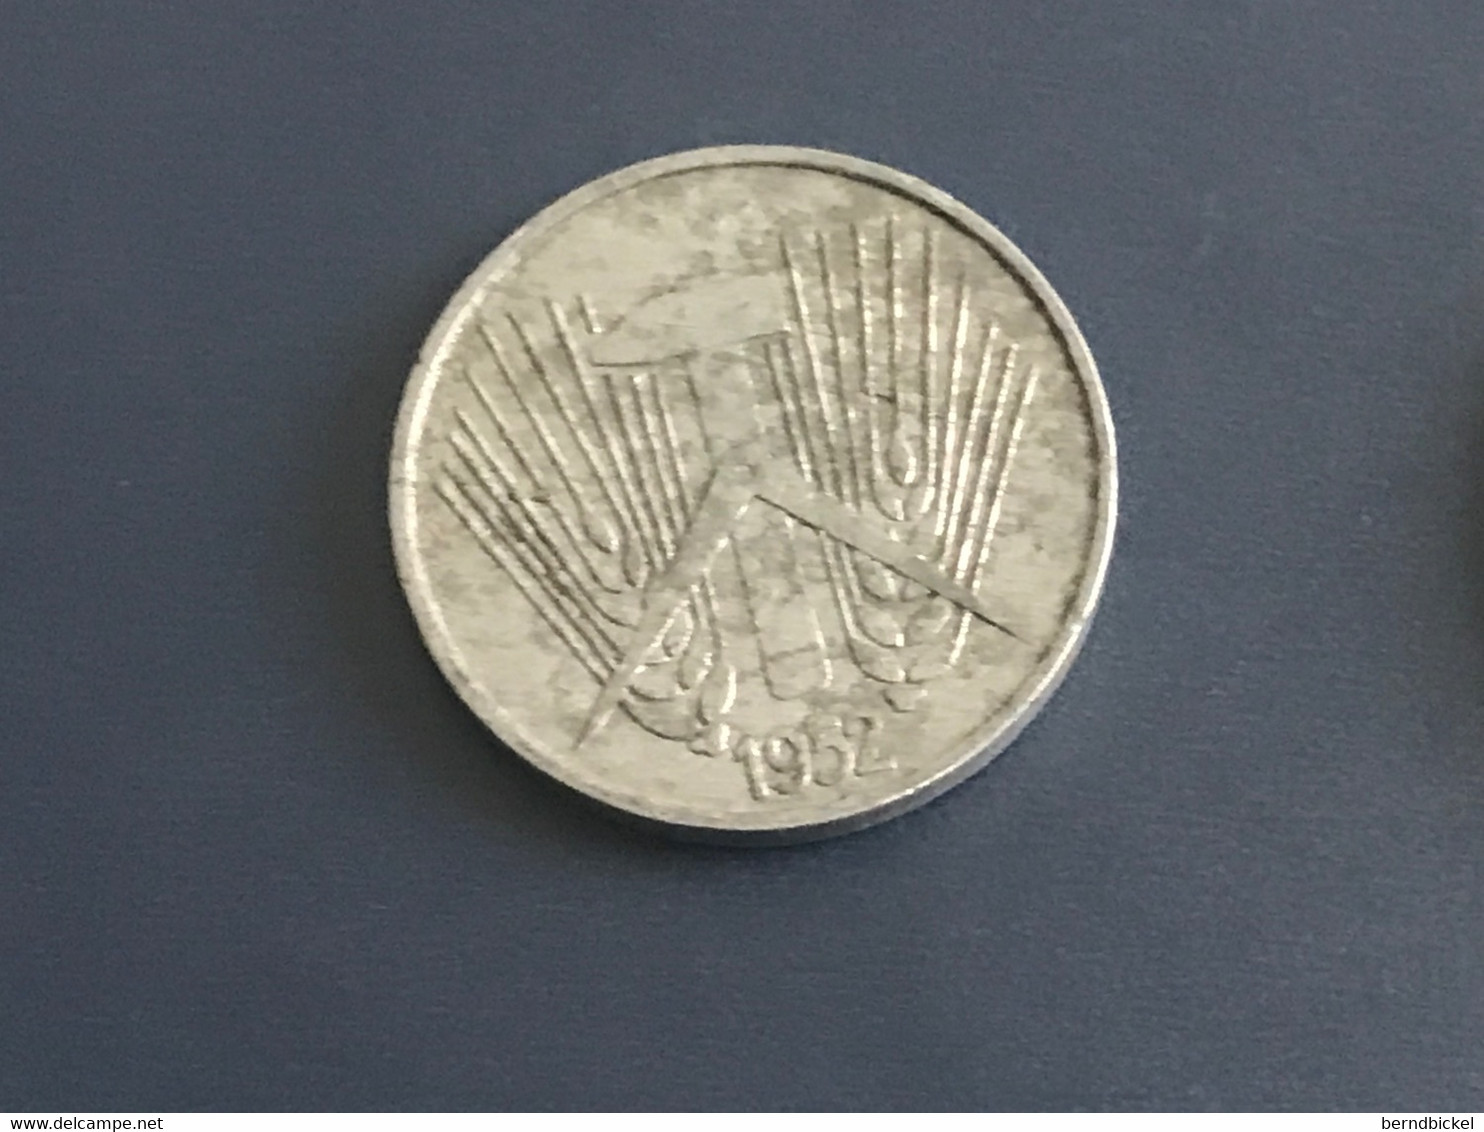 Münze Münzen Umlaufmünze Deutschland DDR 5 Pfennig 1952 Münzzeichen A - 5 Pfennig